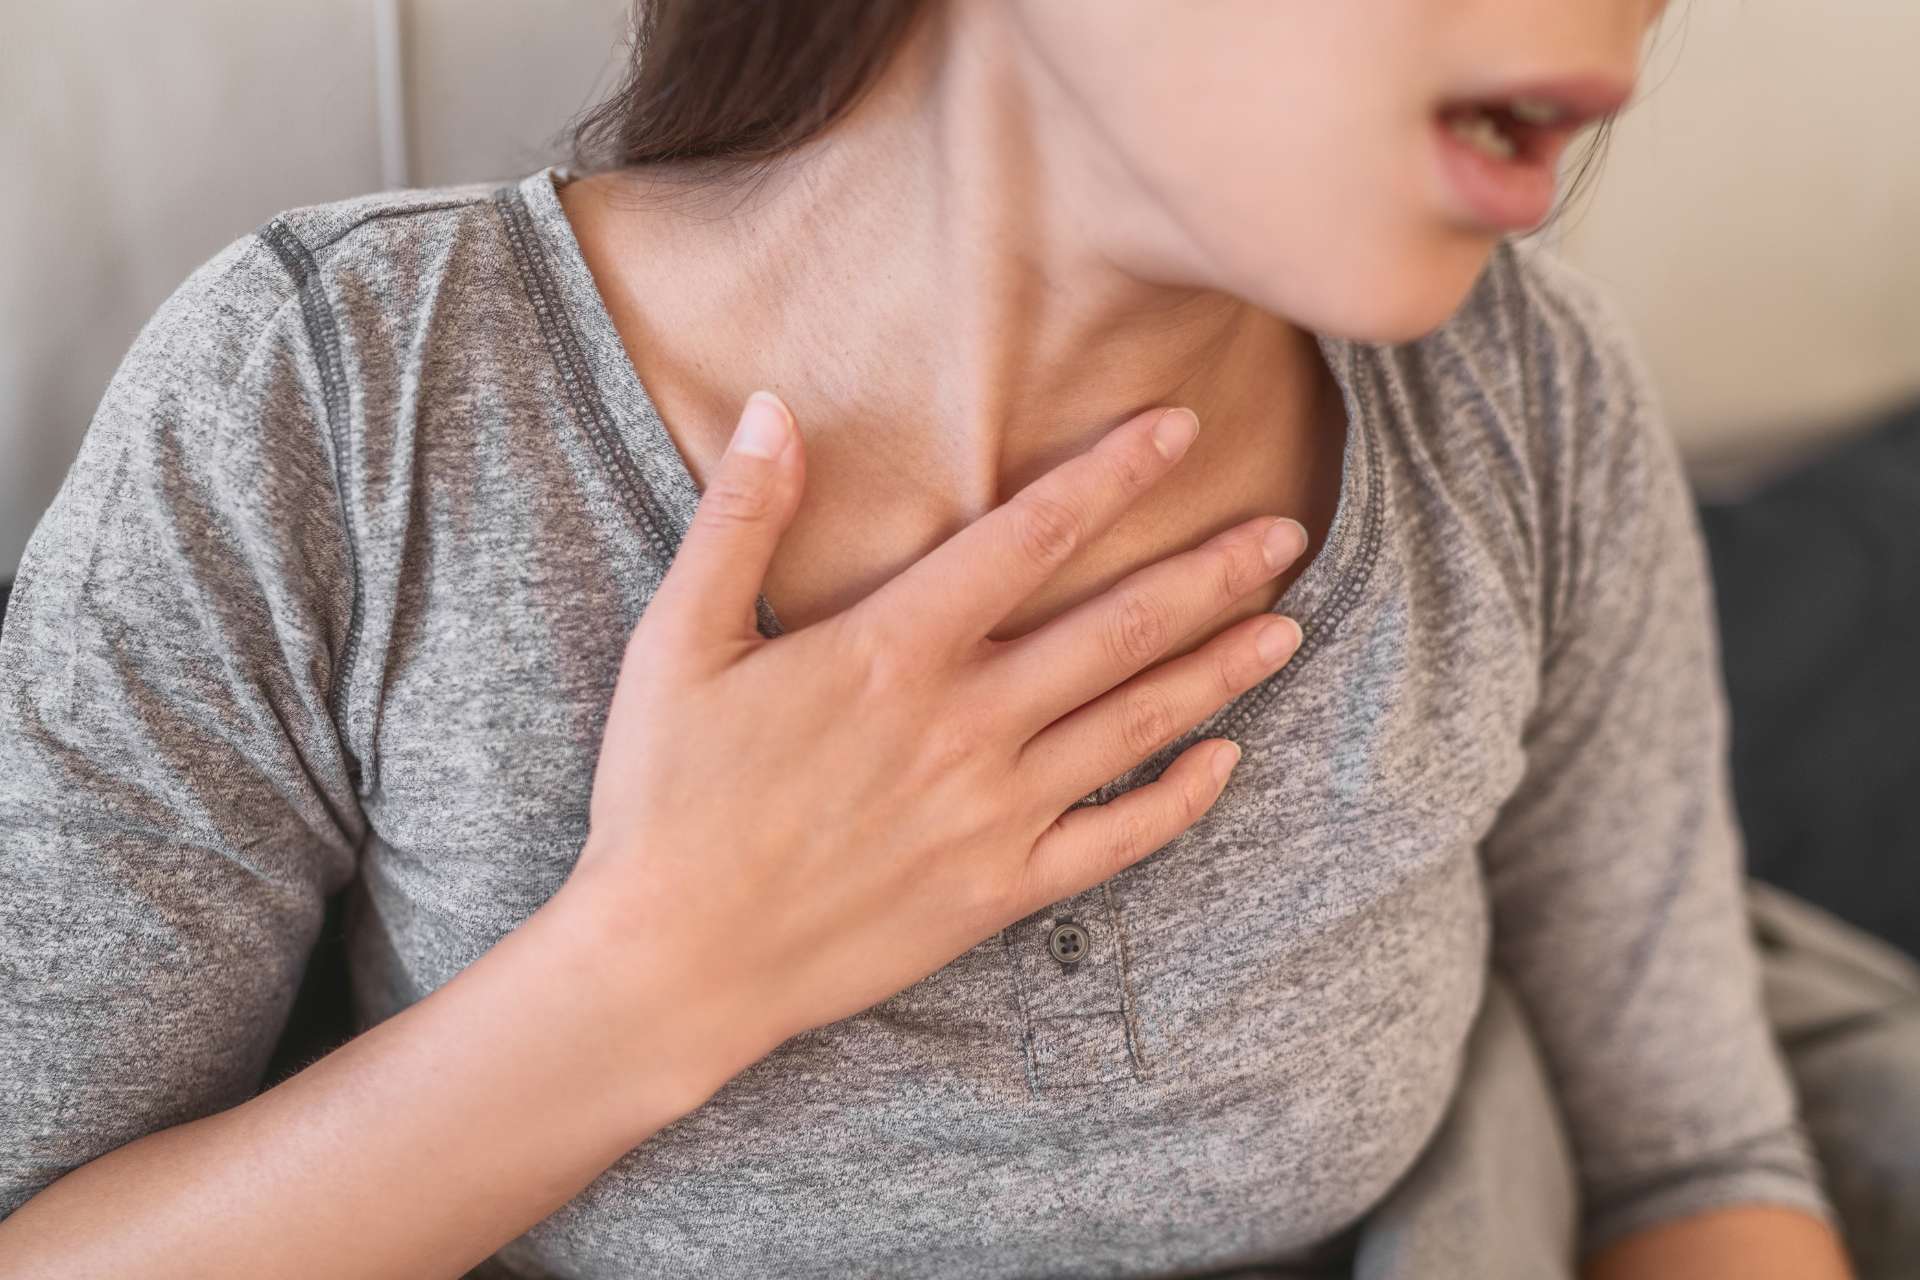 כמה תסמינים של תסמונת גסטרו-לב יכולים להיות דפיקות לב, לחץ בחזה וקצב לב מוגבר.